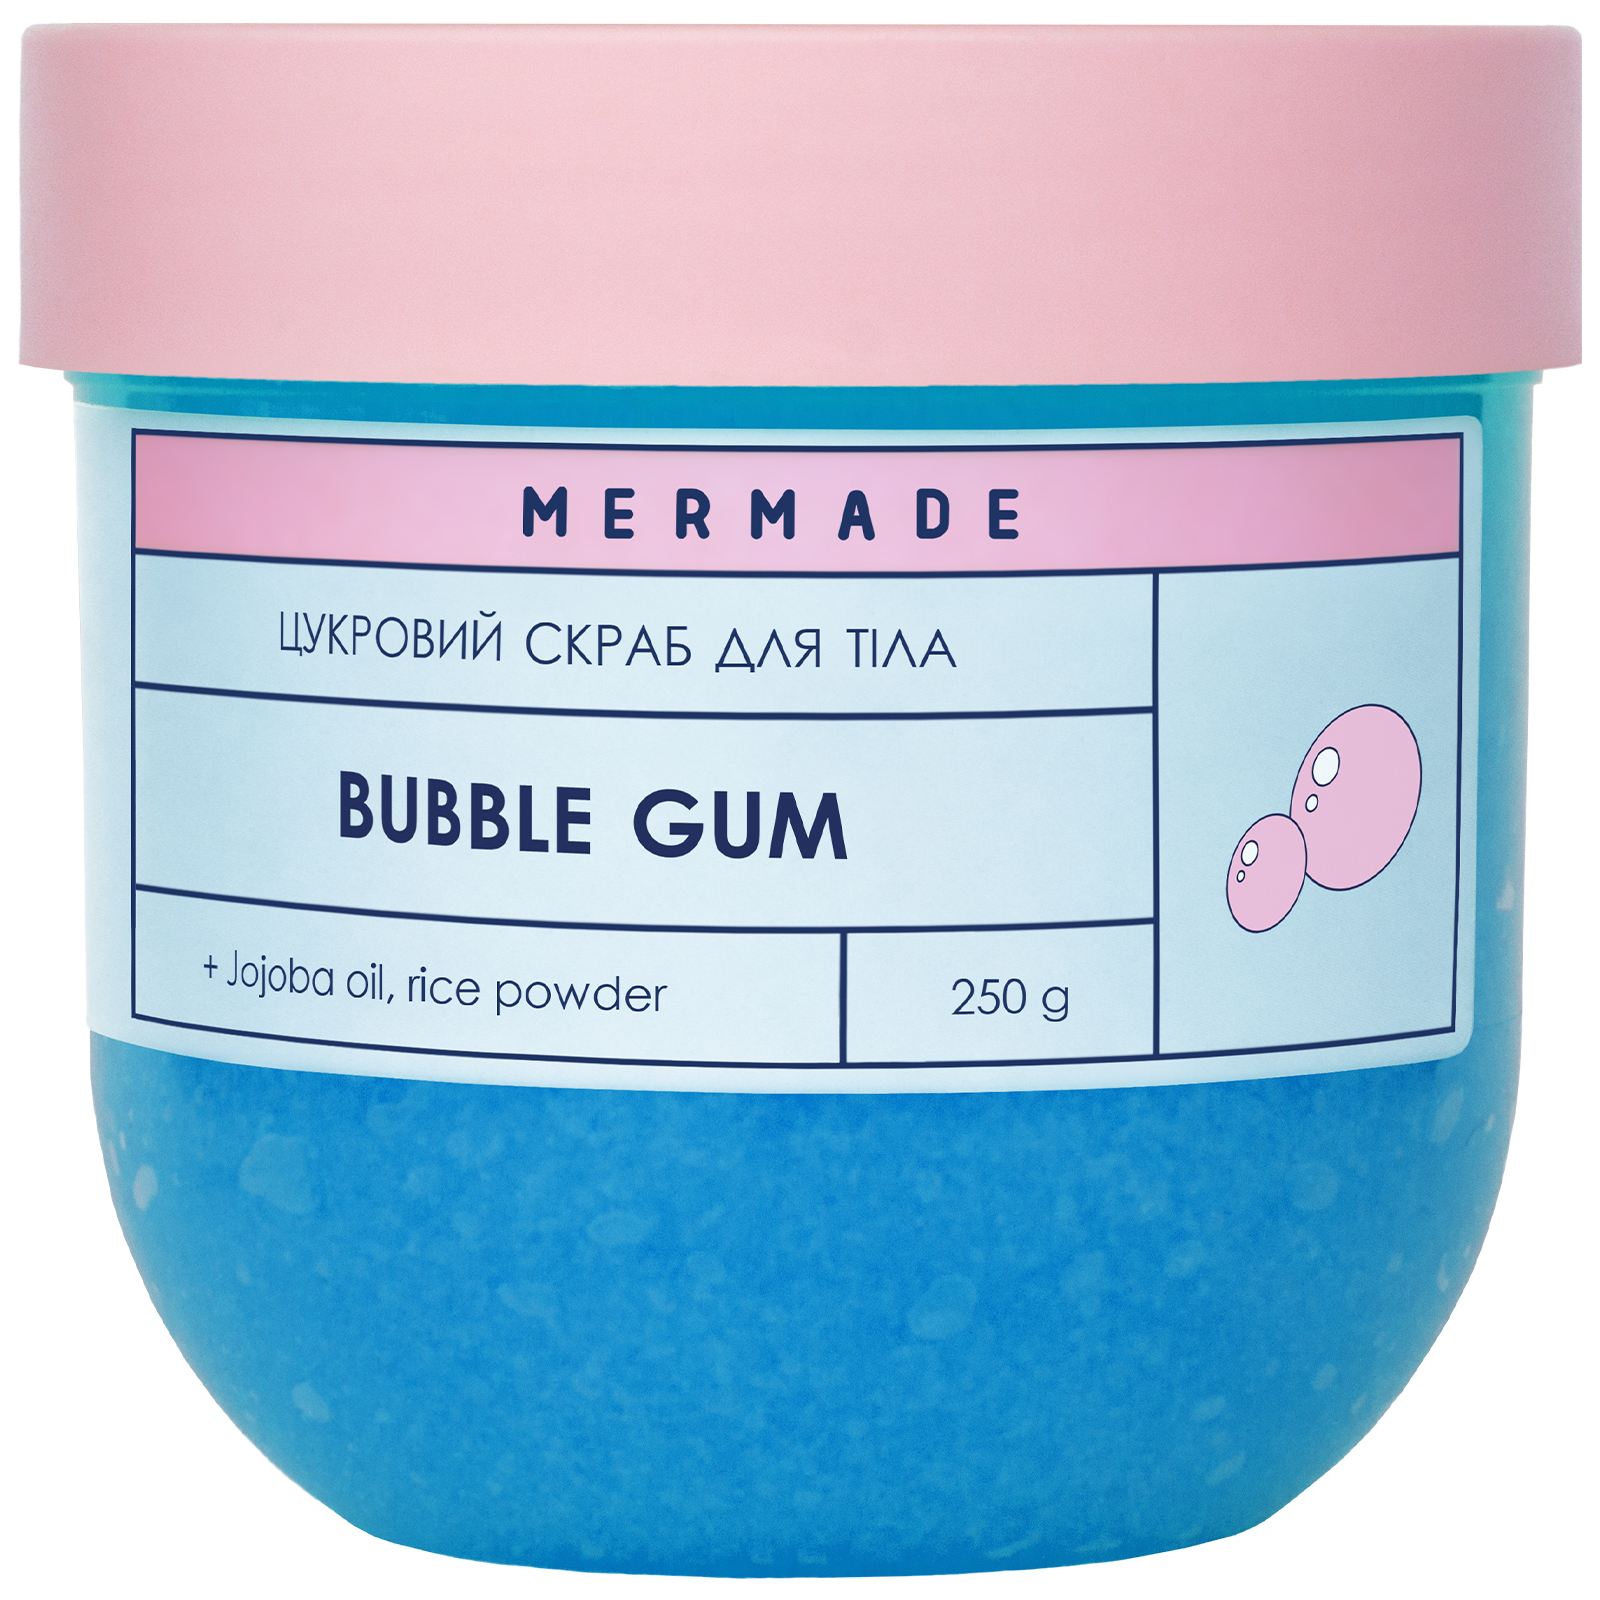 Скраб для тела Mermade Bubble Gum Сахарный 250 г (4820241303694)